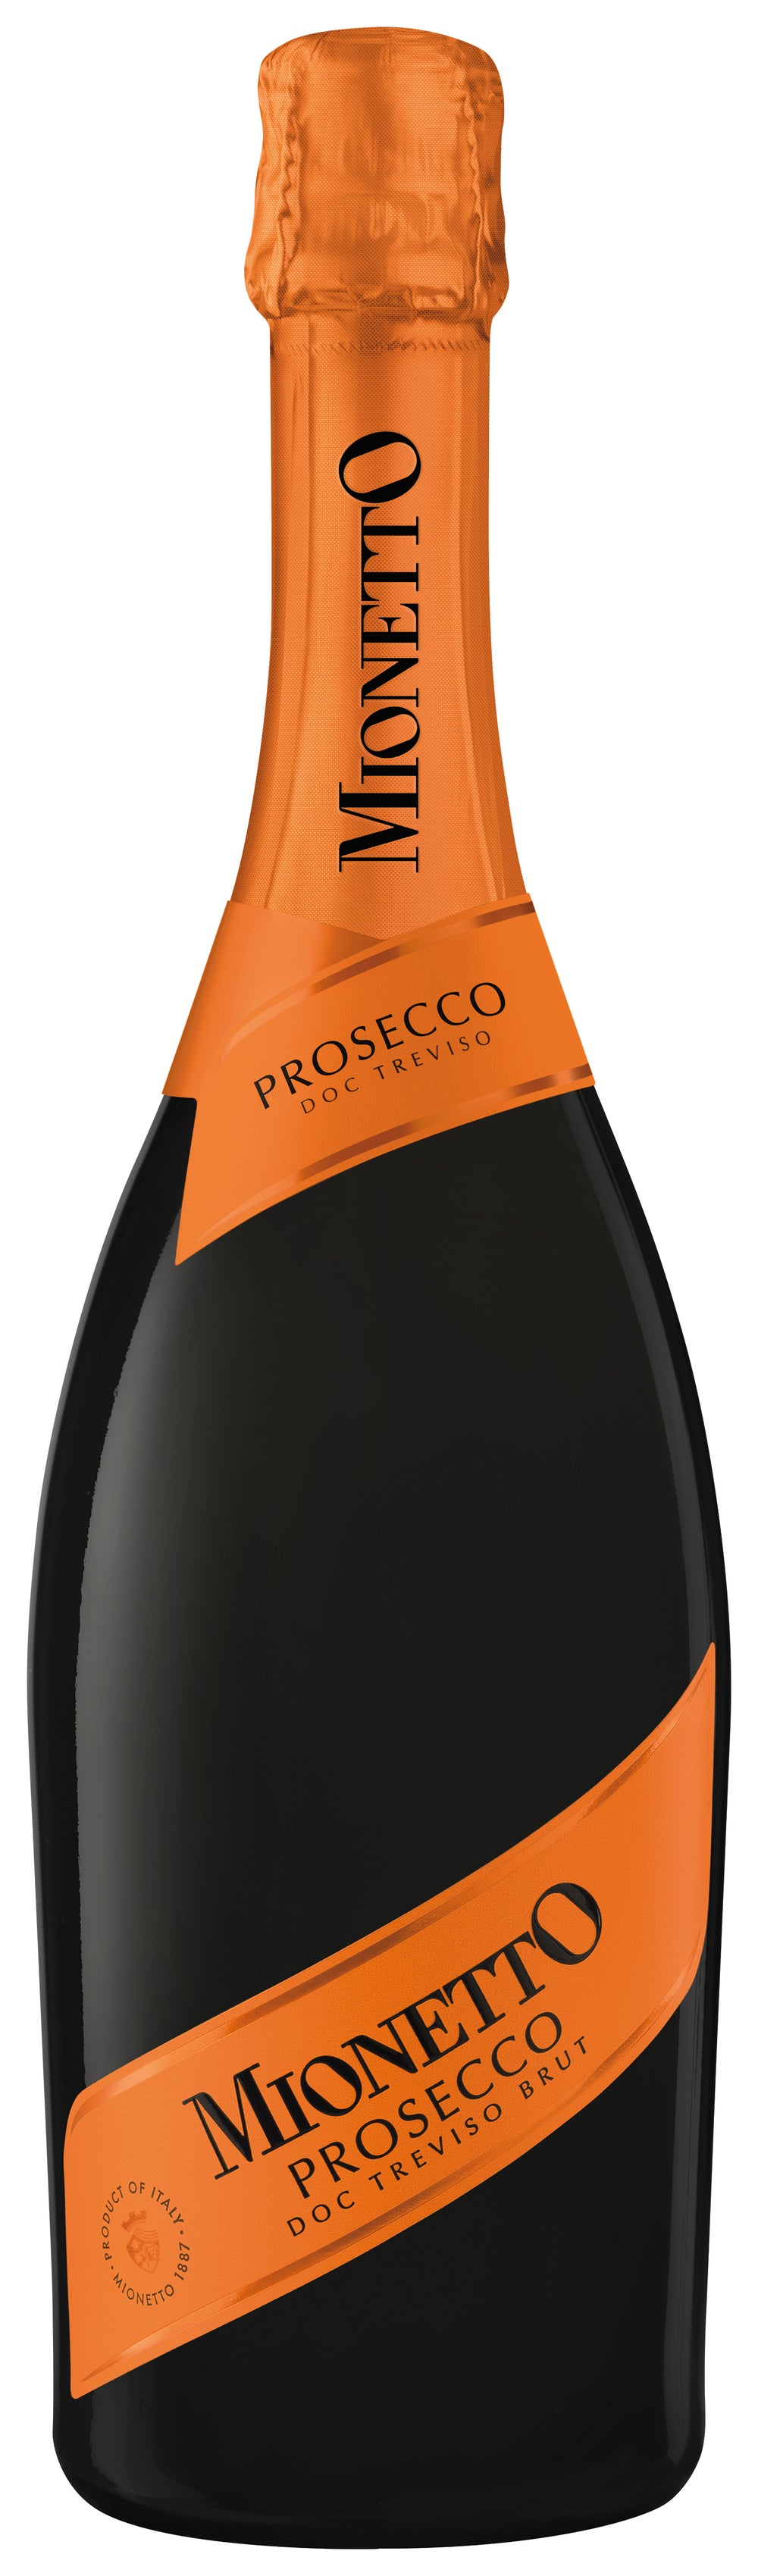 Vino Espumoso Freixenet Mionetto Orange Label 750 ml